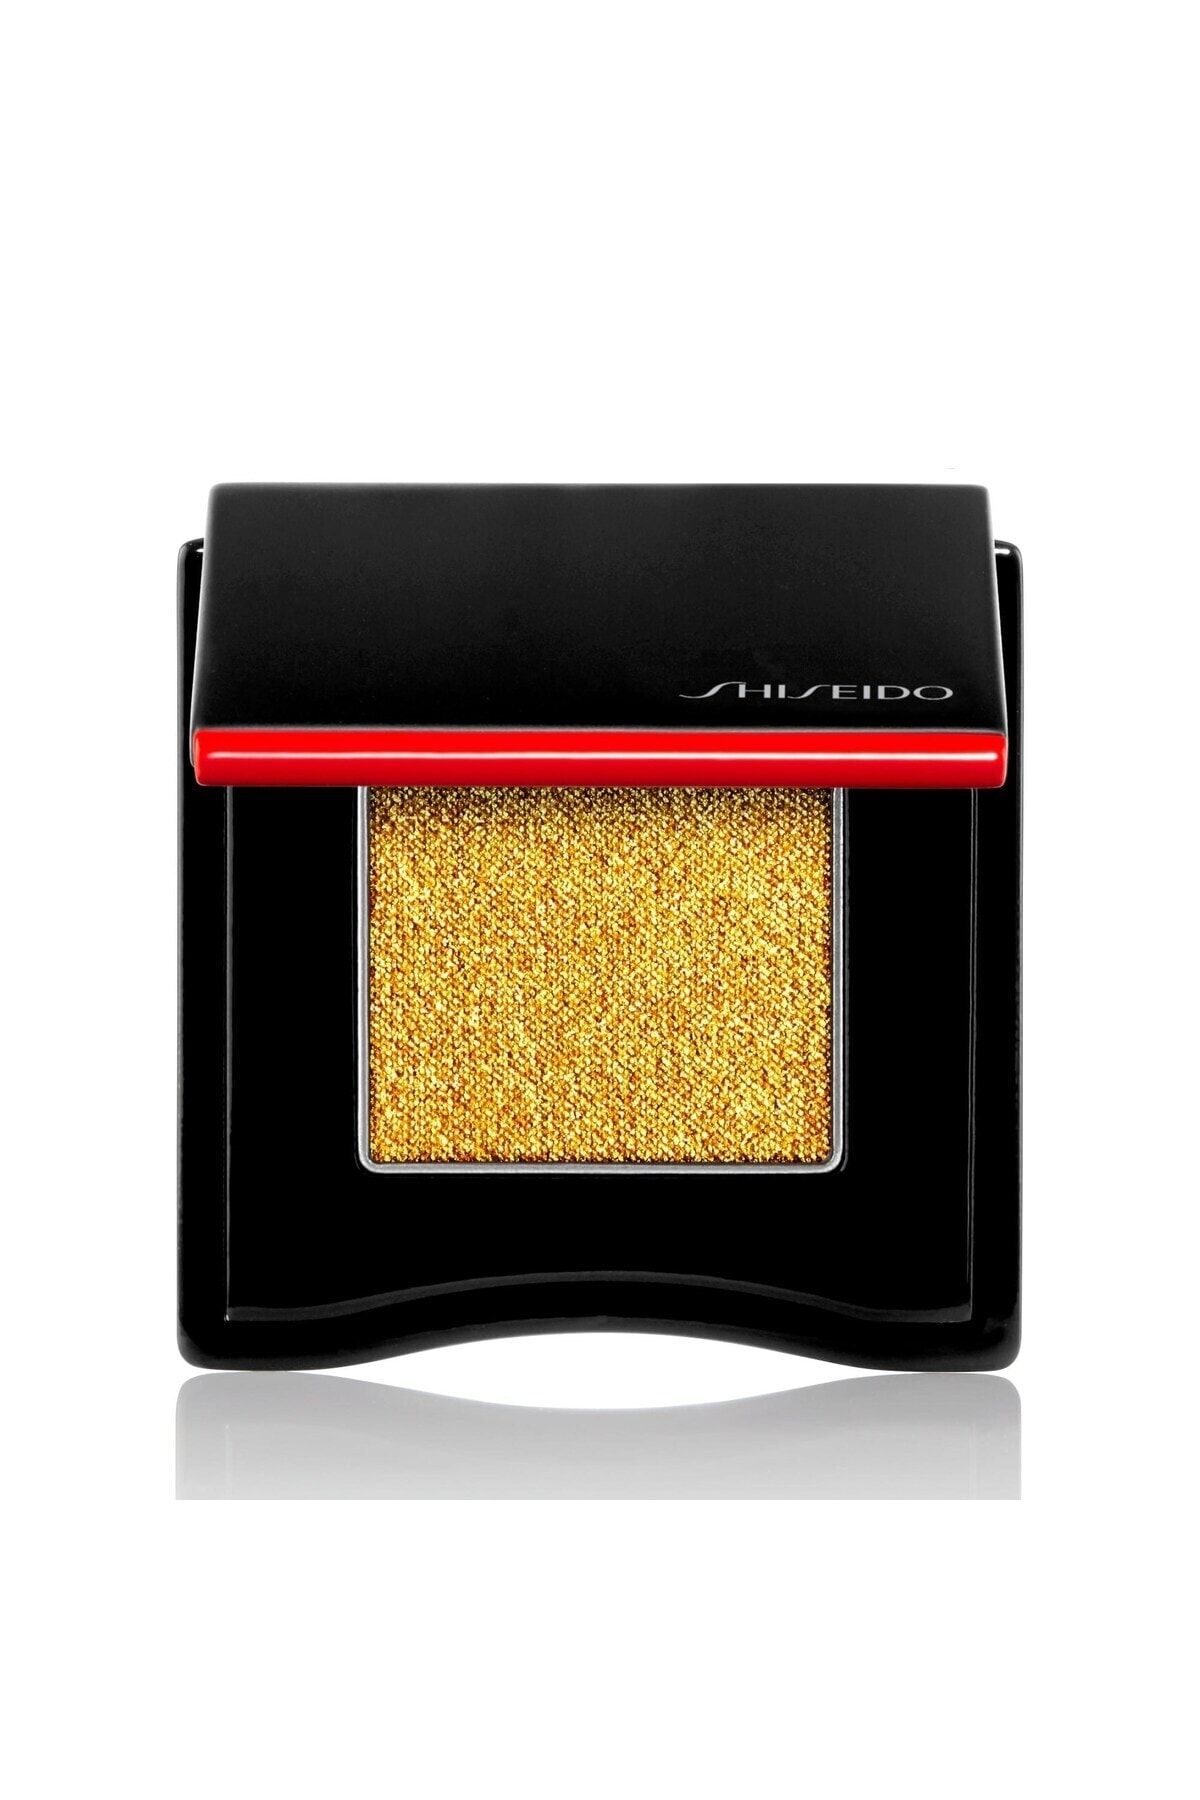 Shiseido Pop Powdergel Eye Shadow Yoğun Pigmentli & Uzun Süre Kalıcı Göz Farı 2.2 Gr